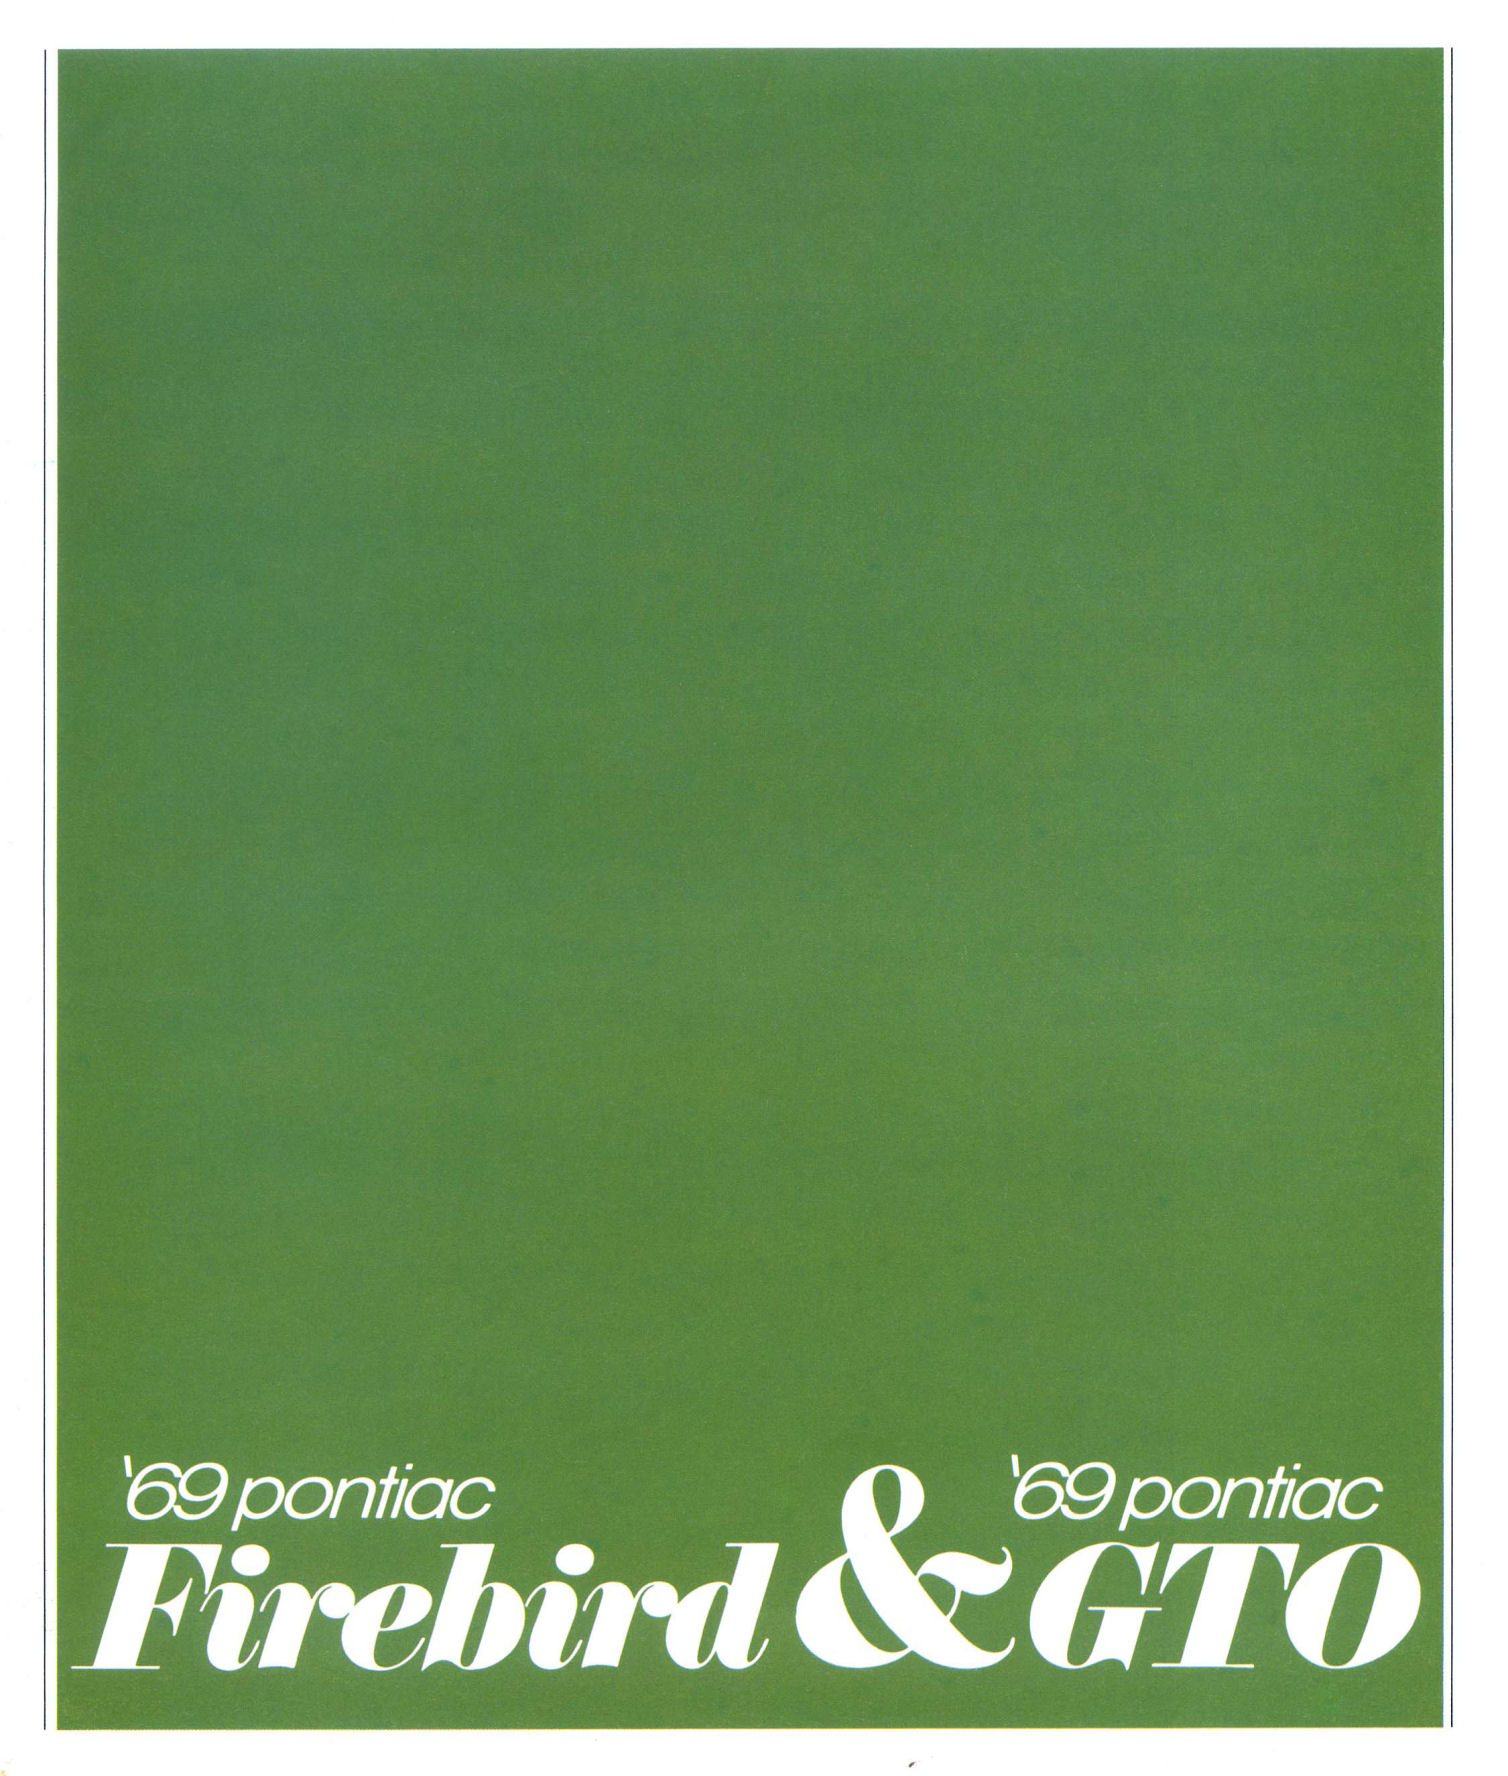 1969_Pontiac_Firebird_and_GTO_Cdn-01